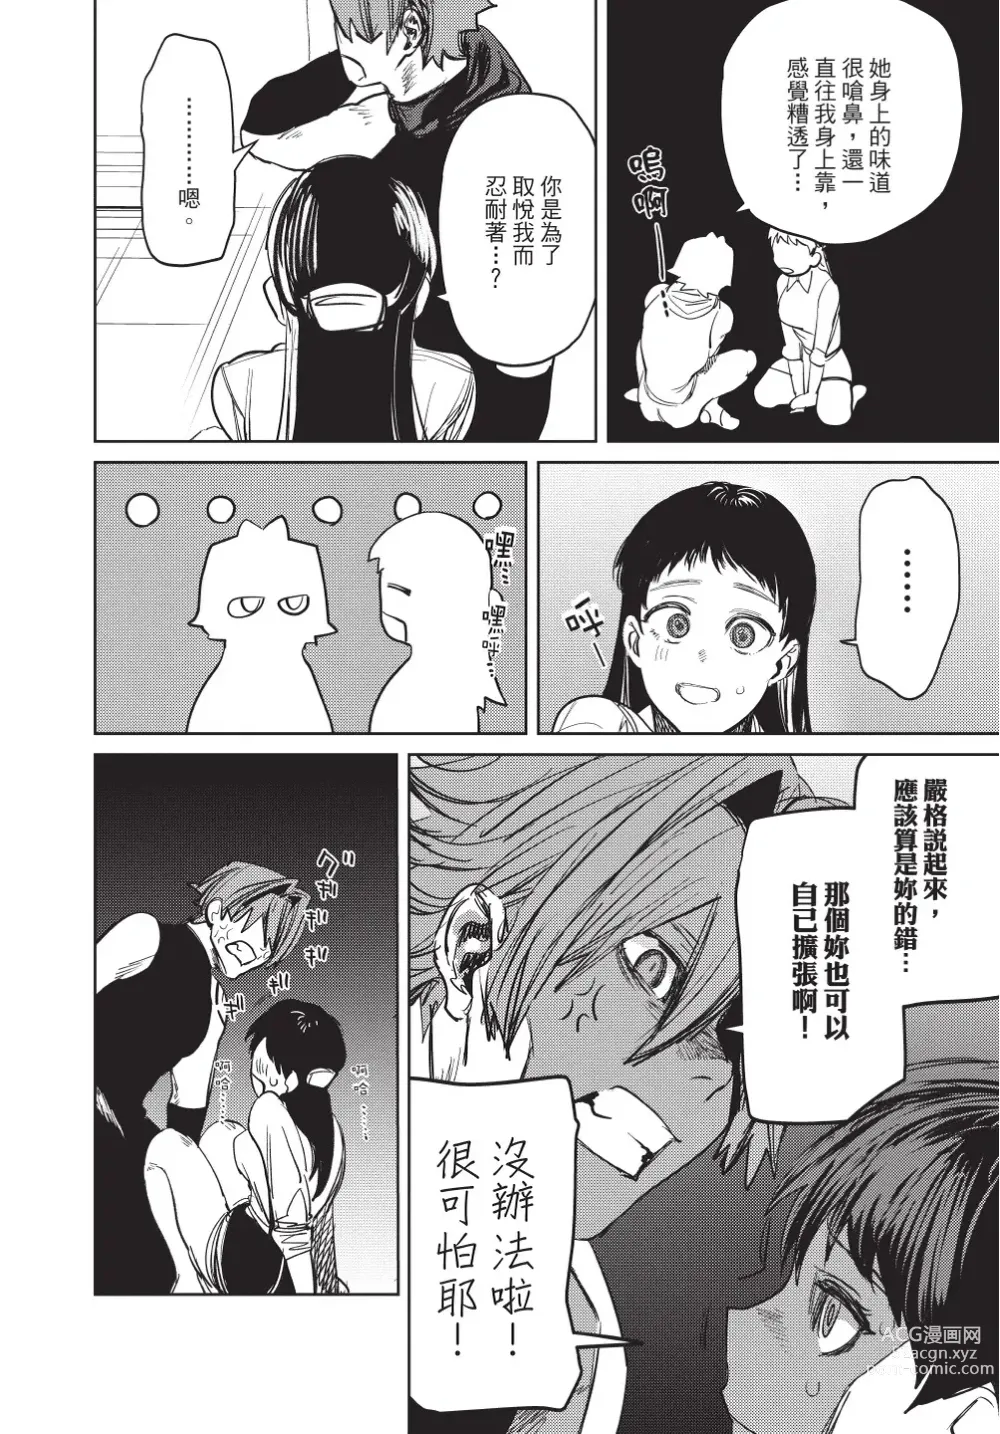 Page 154 of manga 在異世界旅途中拯救我的是一名少年殺手